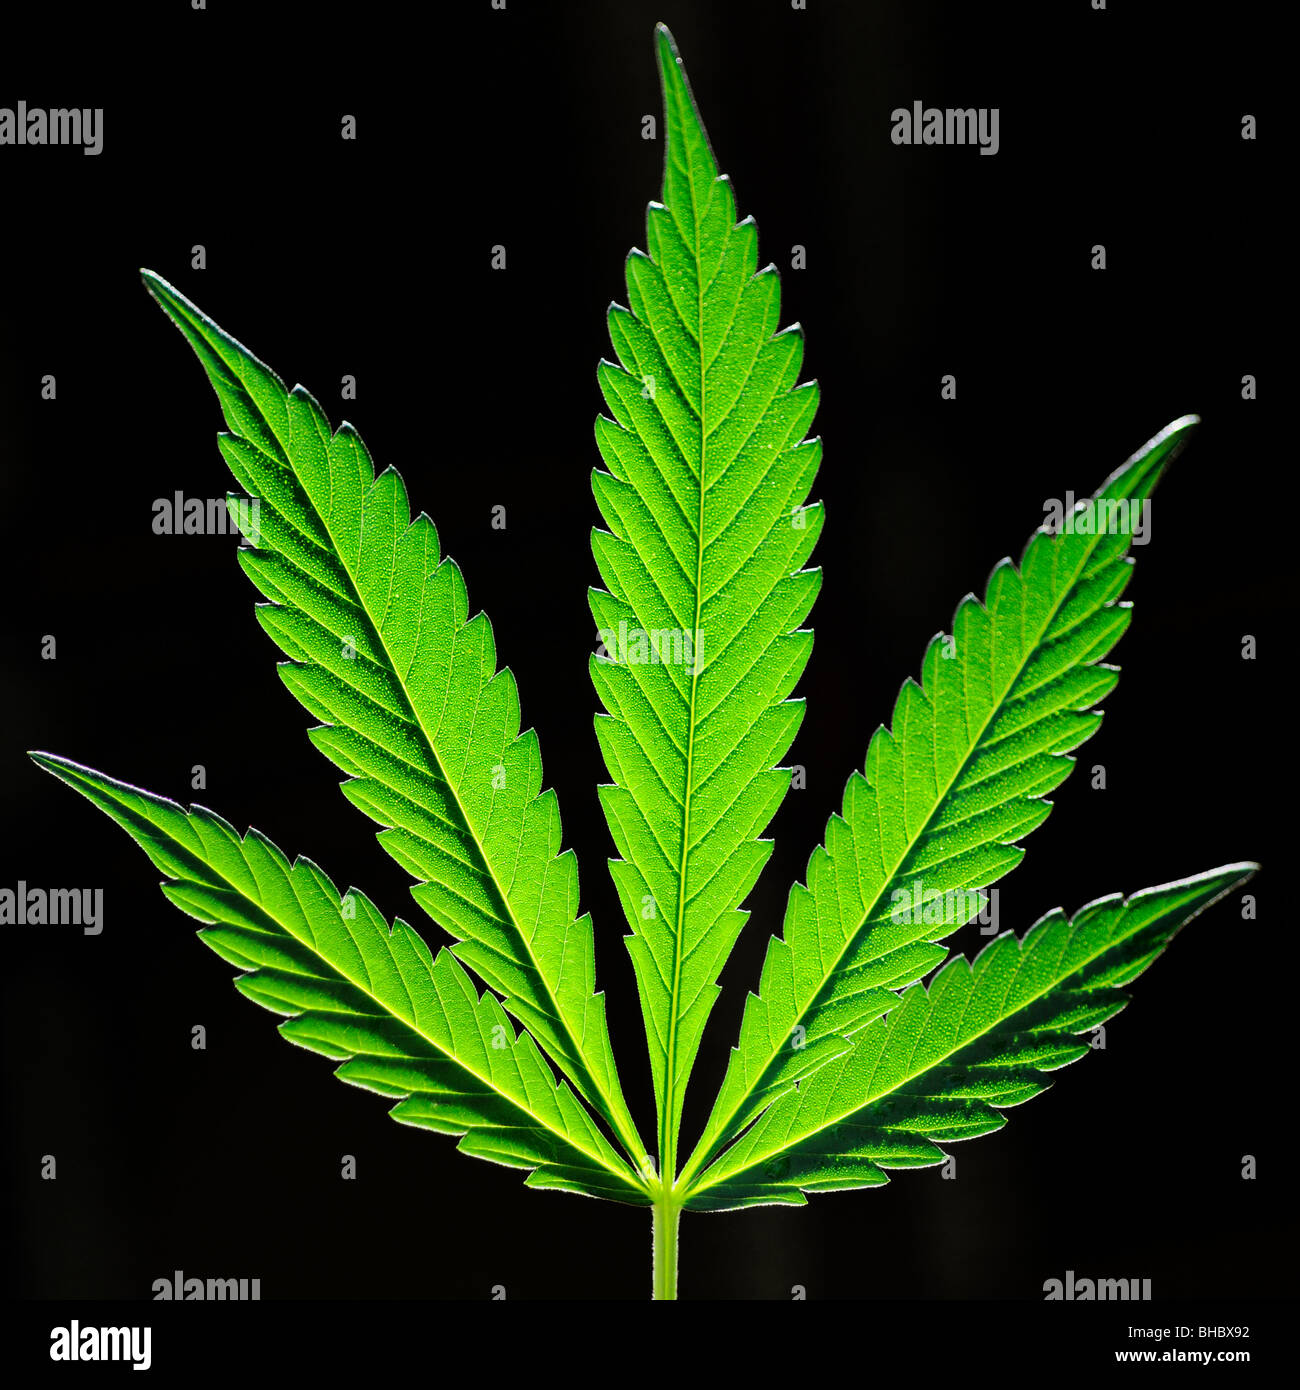 Foglia di marijuana immagini e fotografie stock ad alta risoluzione - Alamy